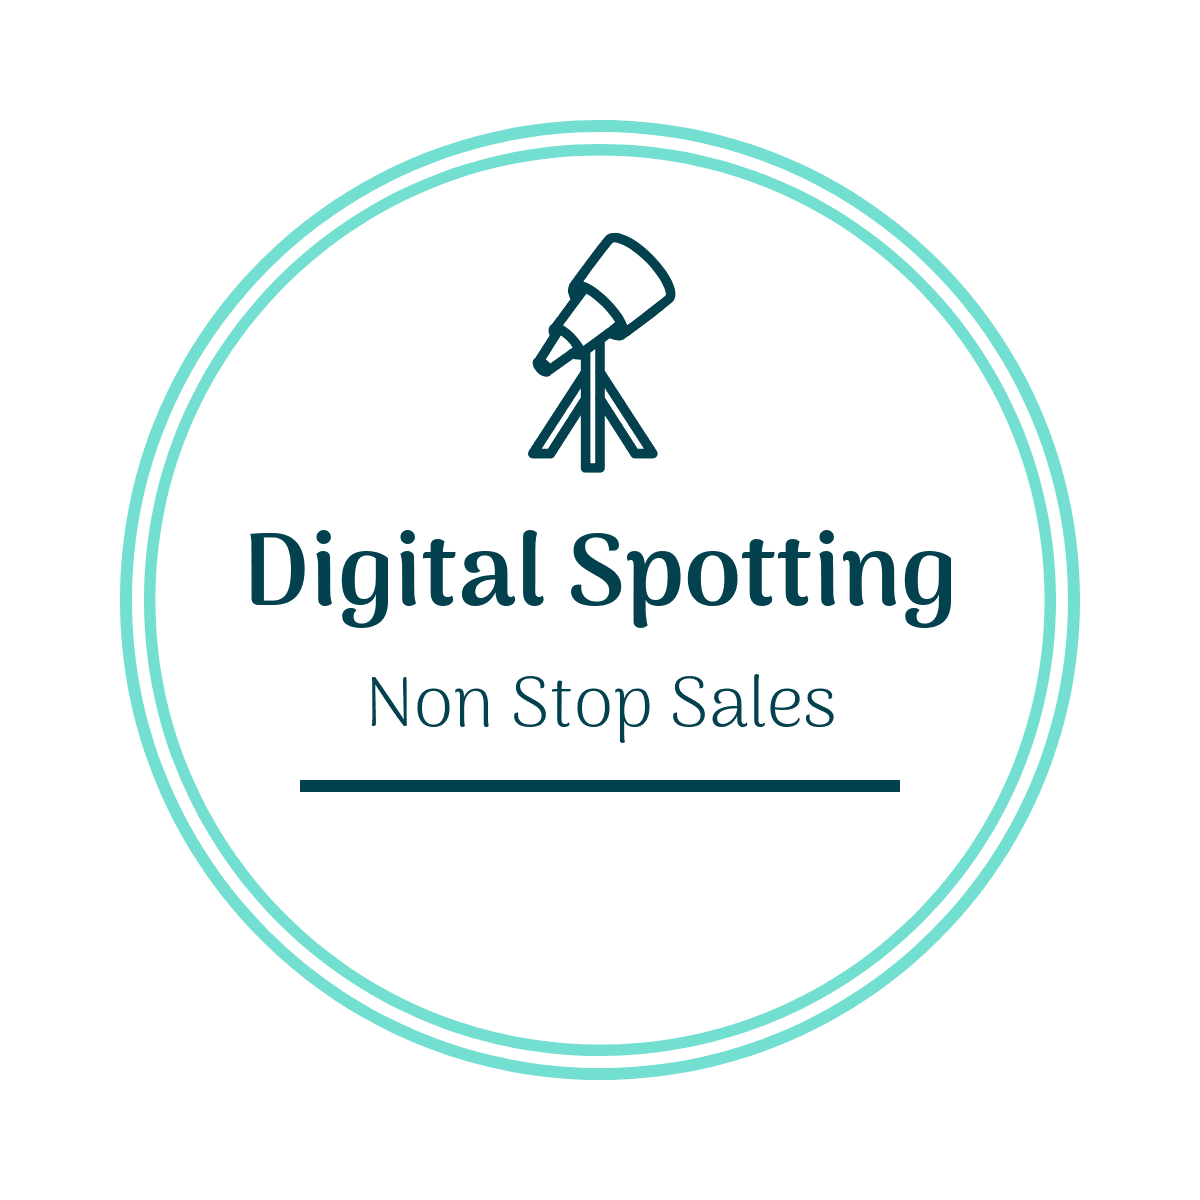 Digital Spotting